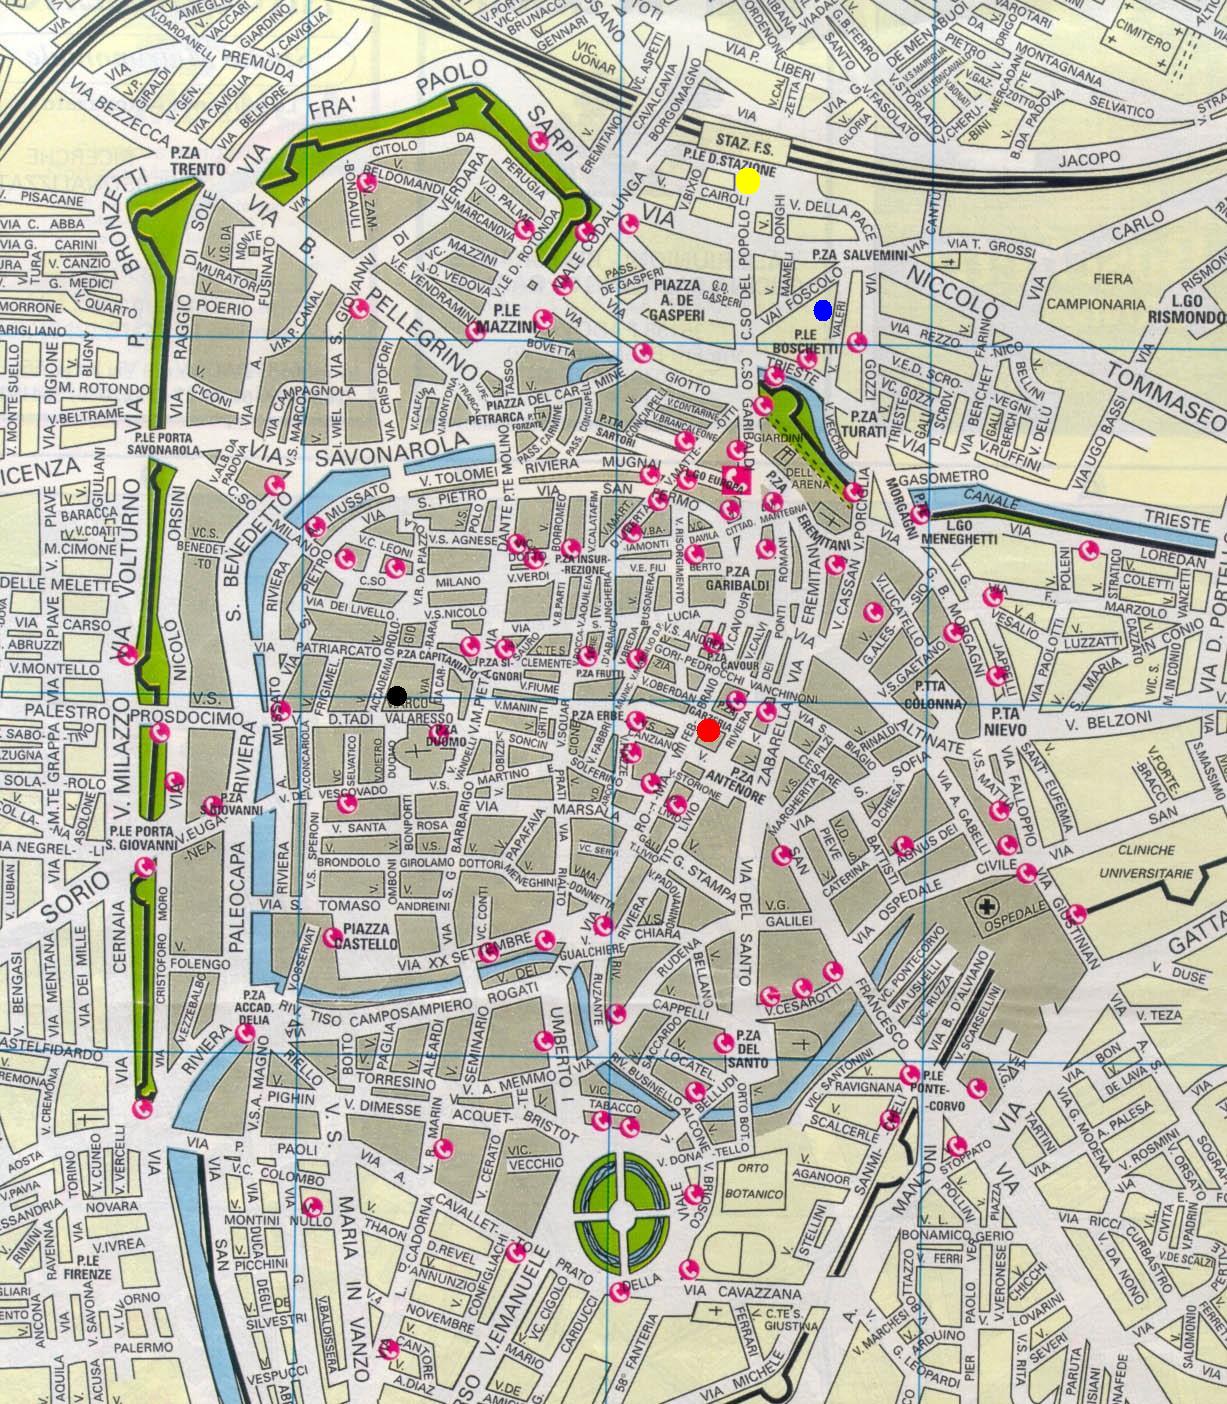 Padua center map.